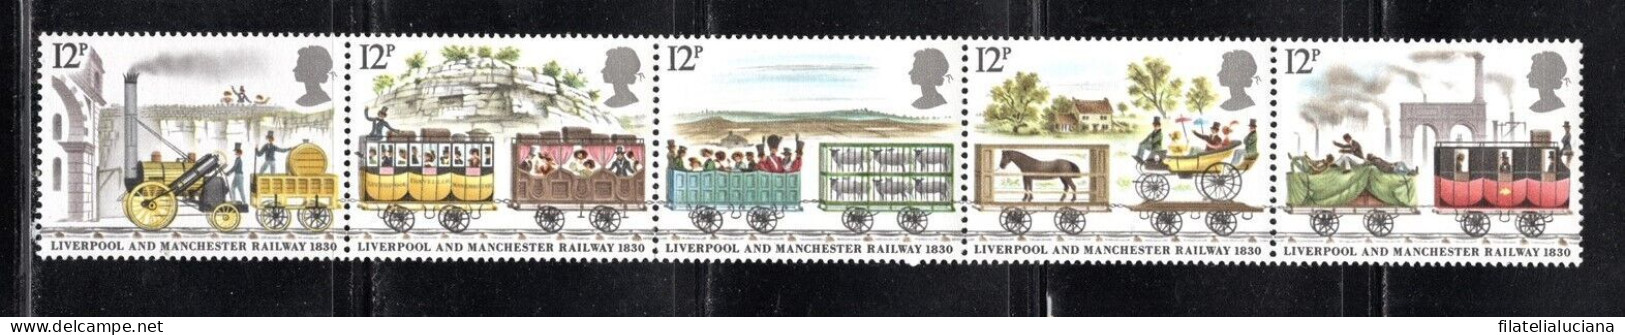 Great Britain Stamp Scott #904-908 (SG1113-1117), Railway, Strip Of 5, MNH - Tranvías